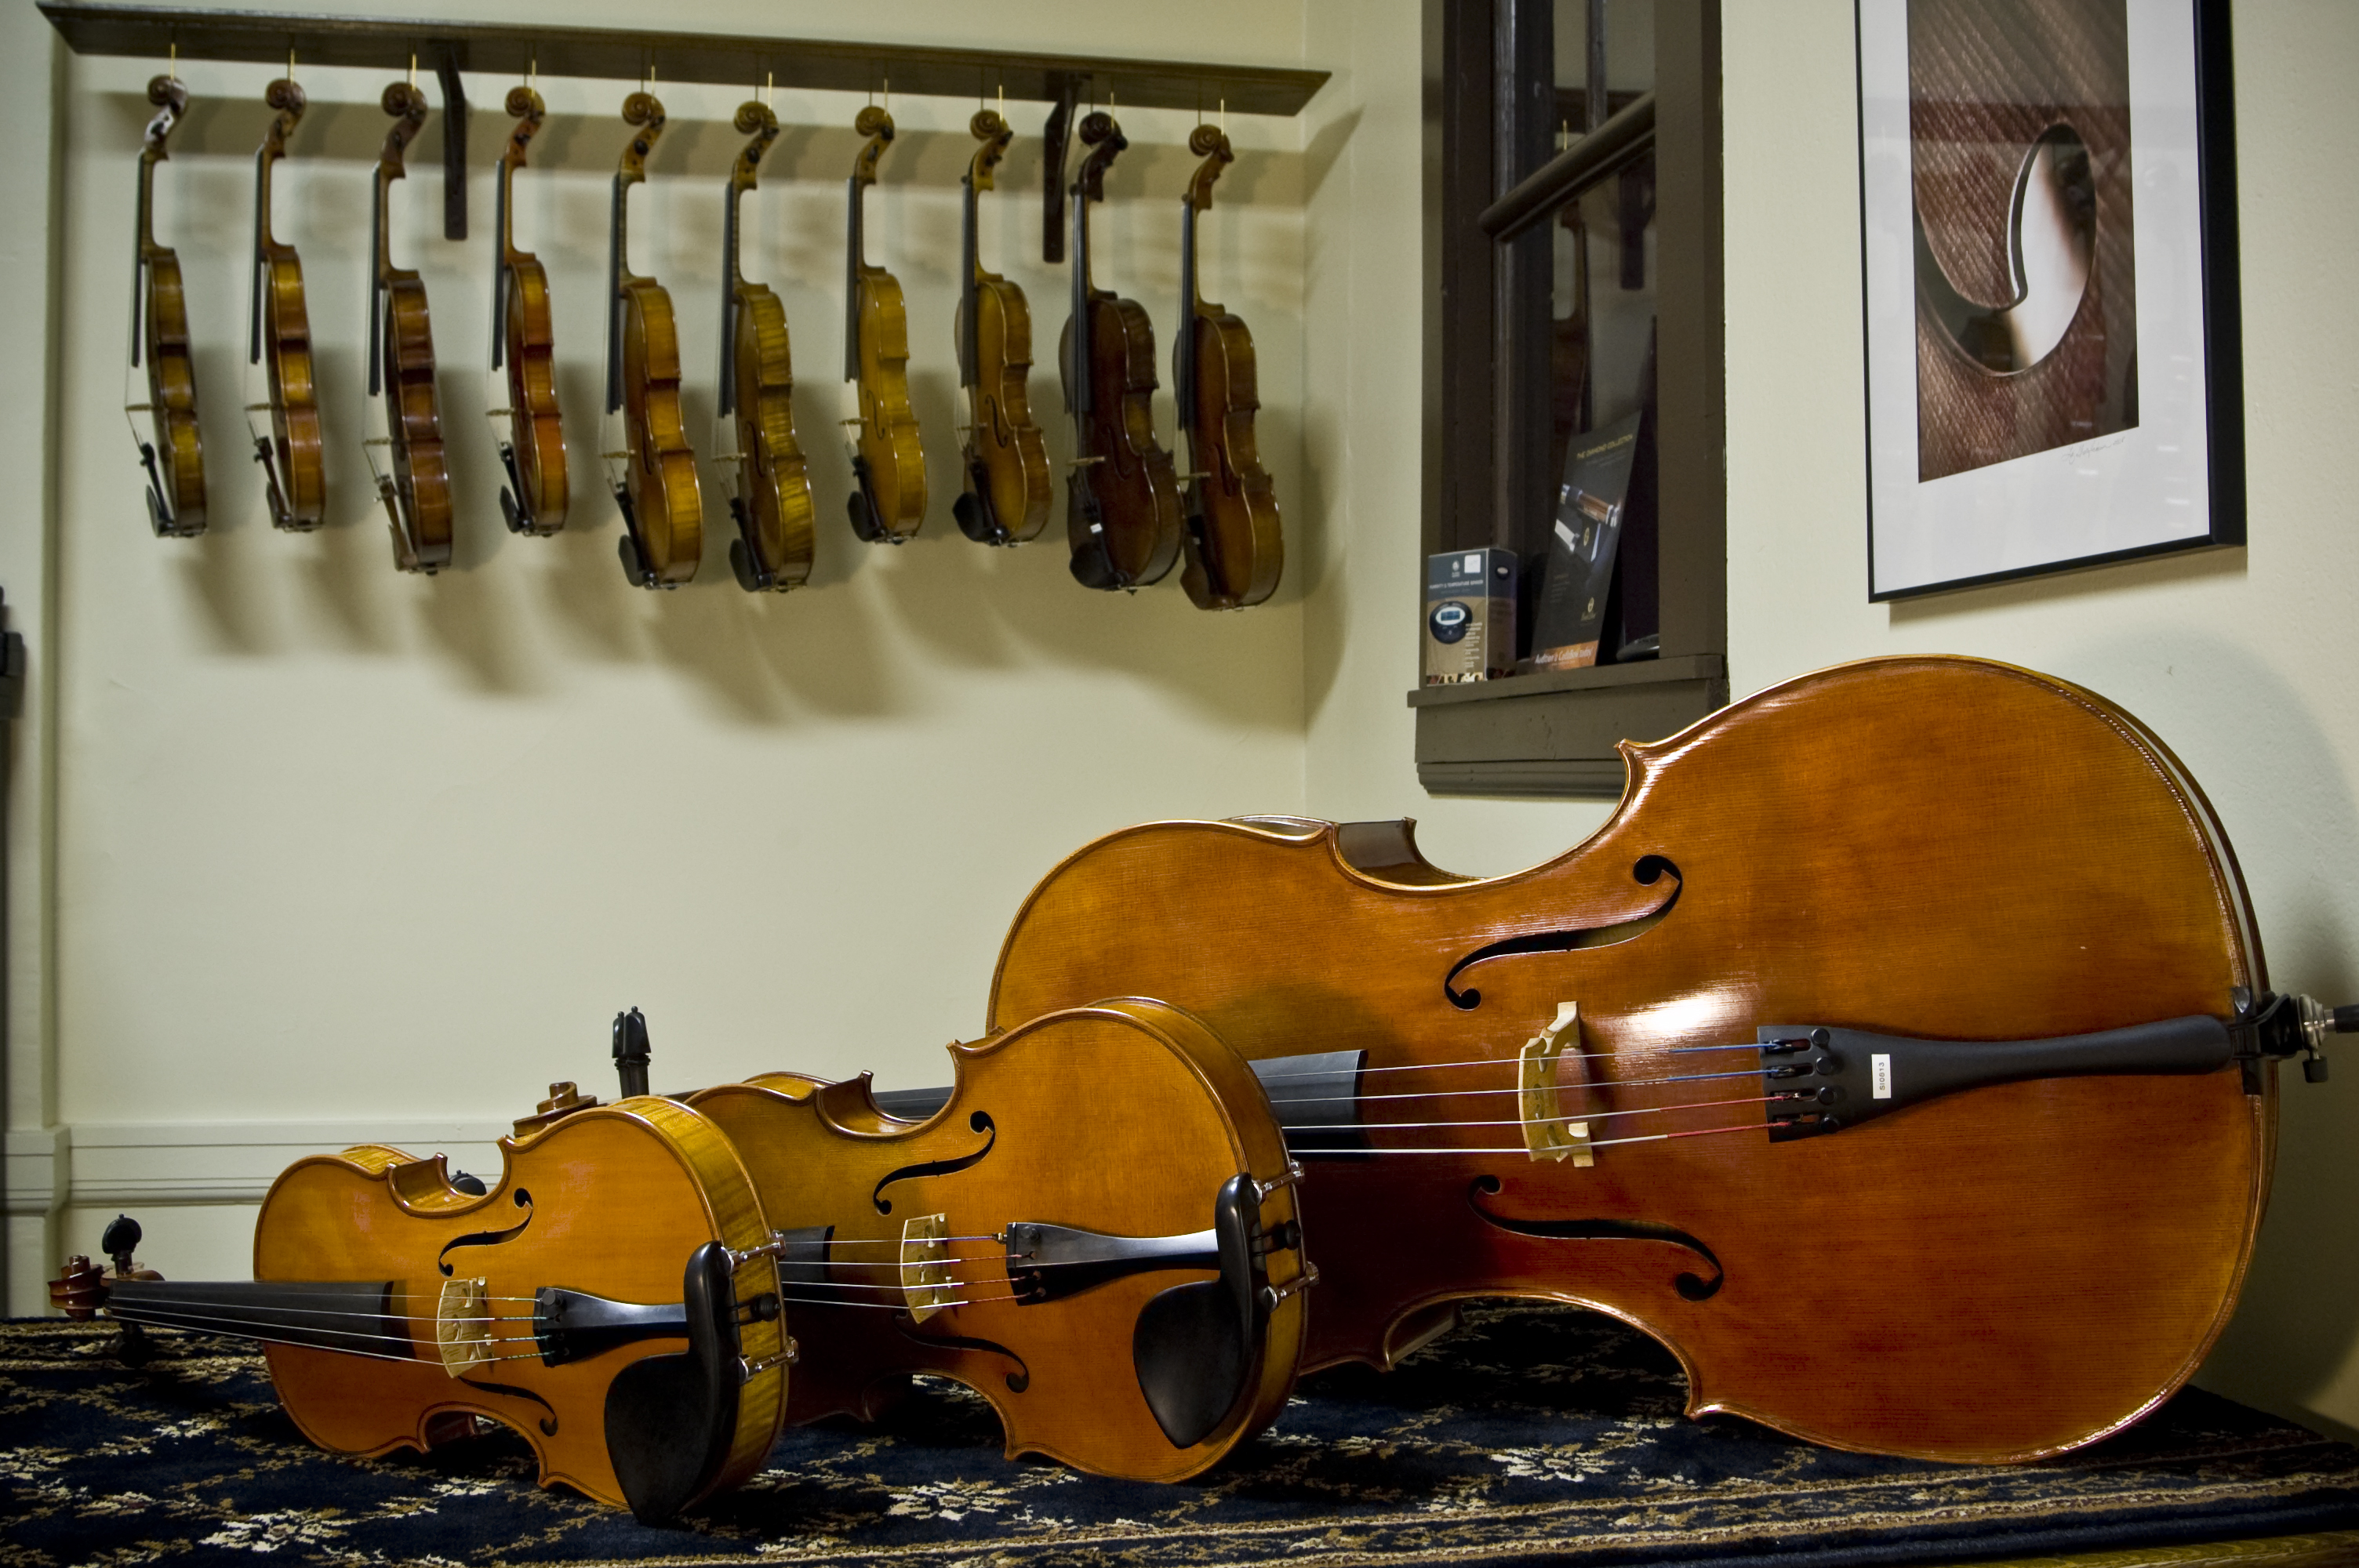 Maine Violin Shop | Violin Maker | Violins, Violas, Cellos, Stringed